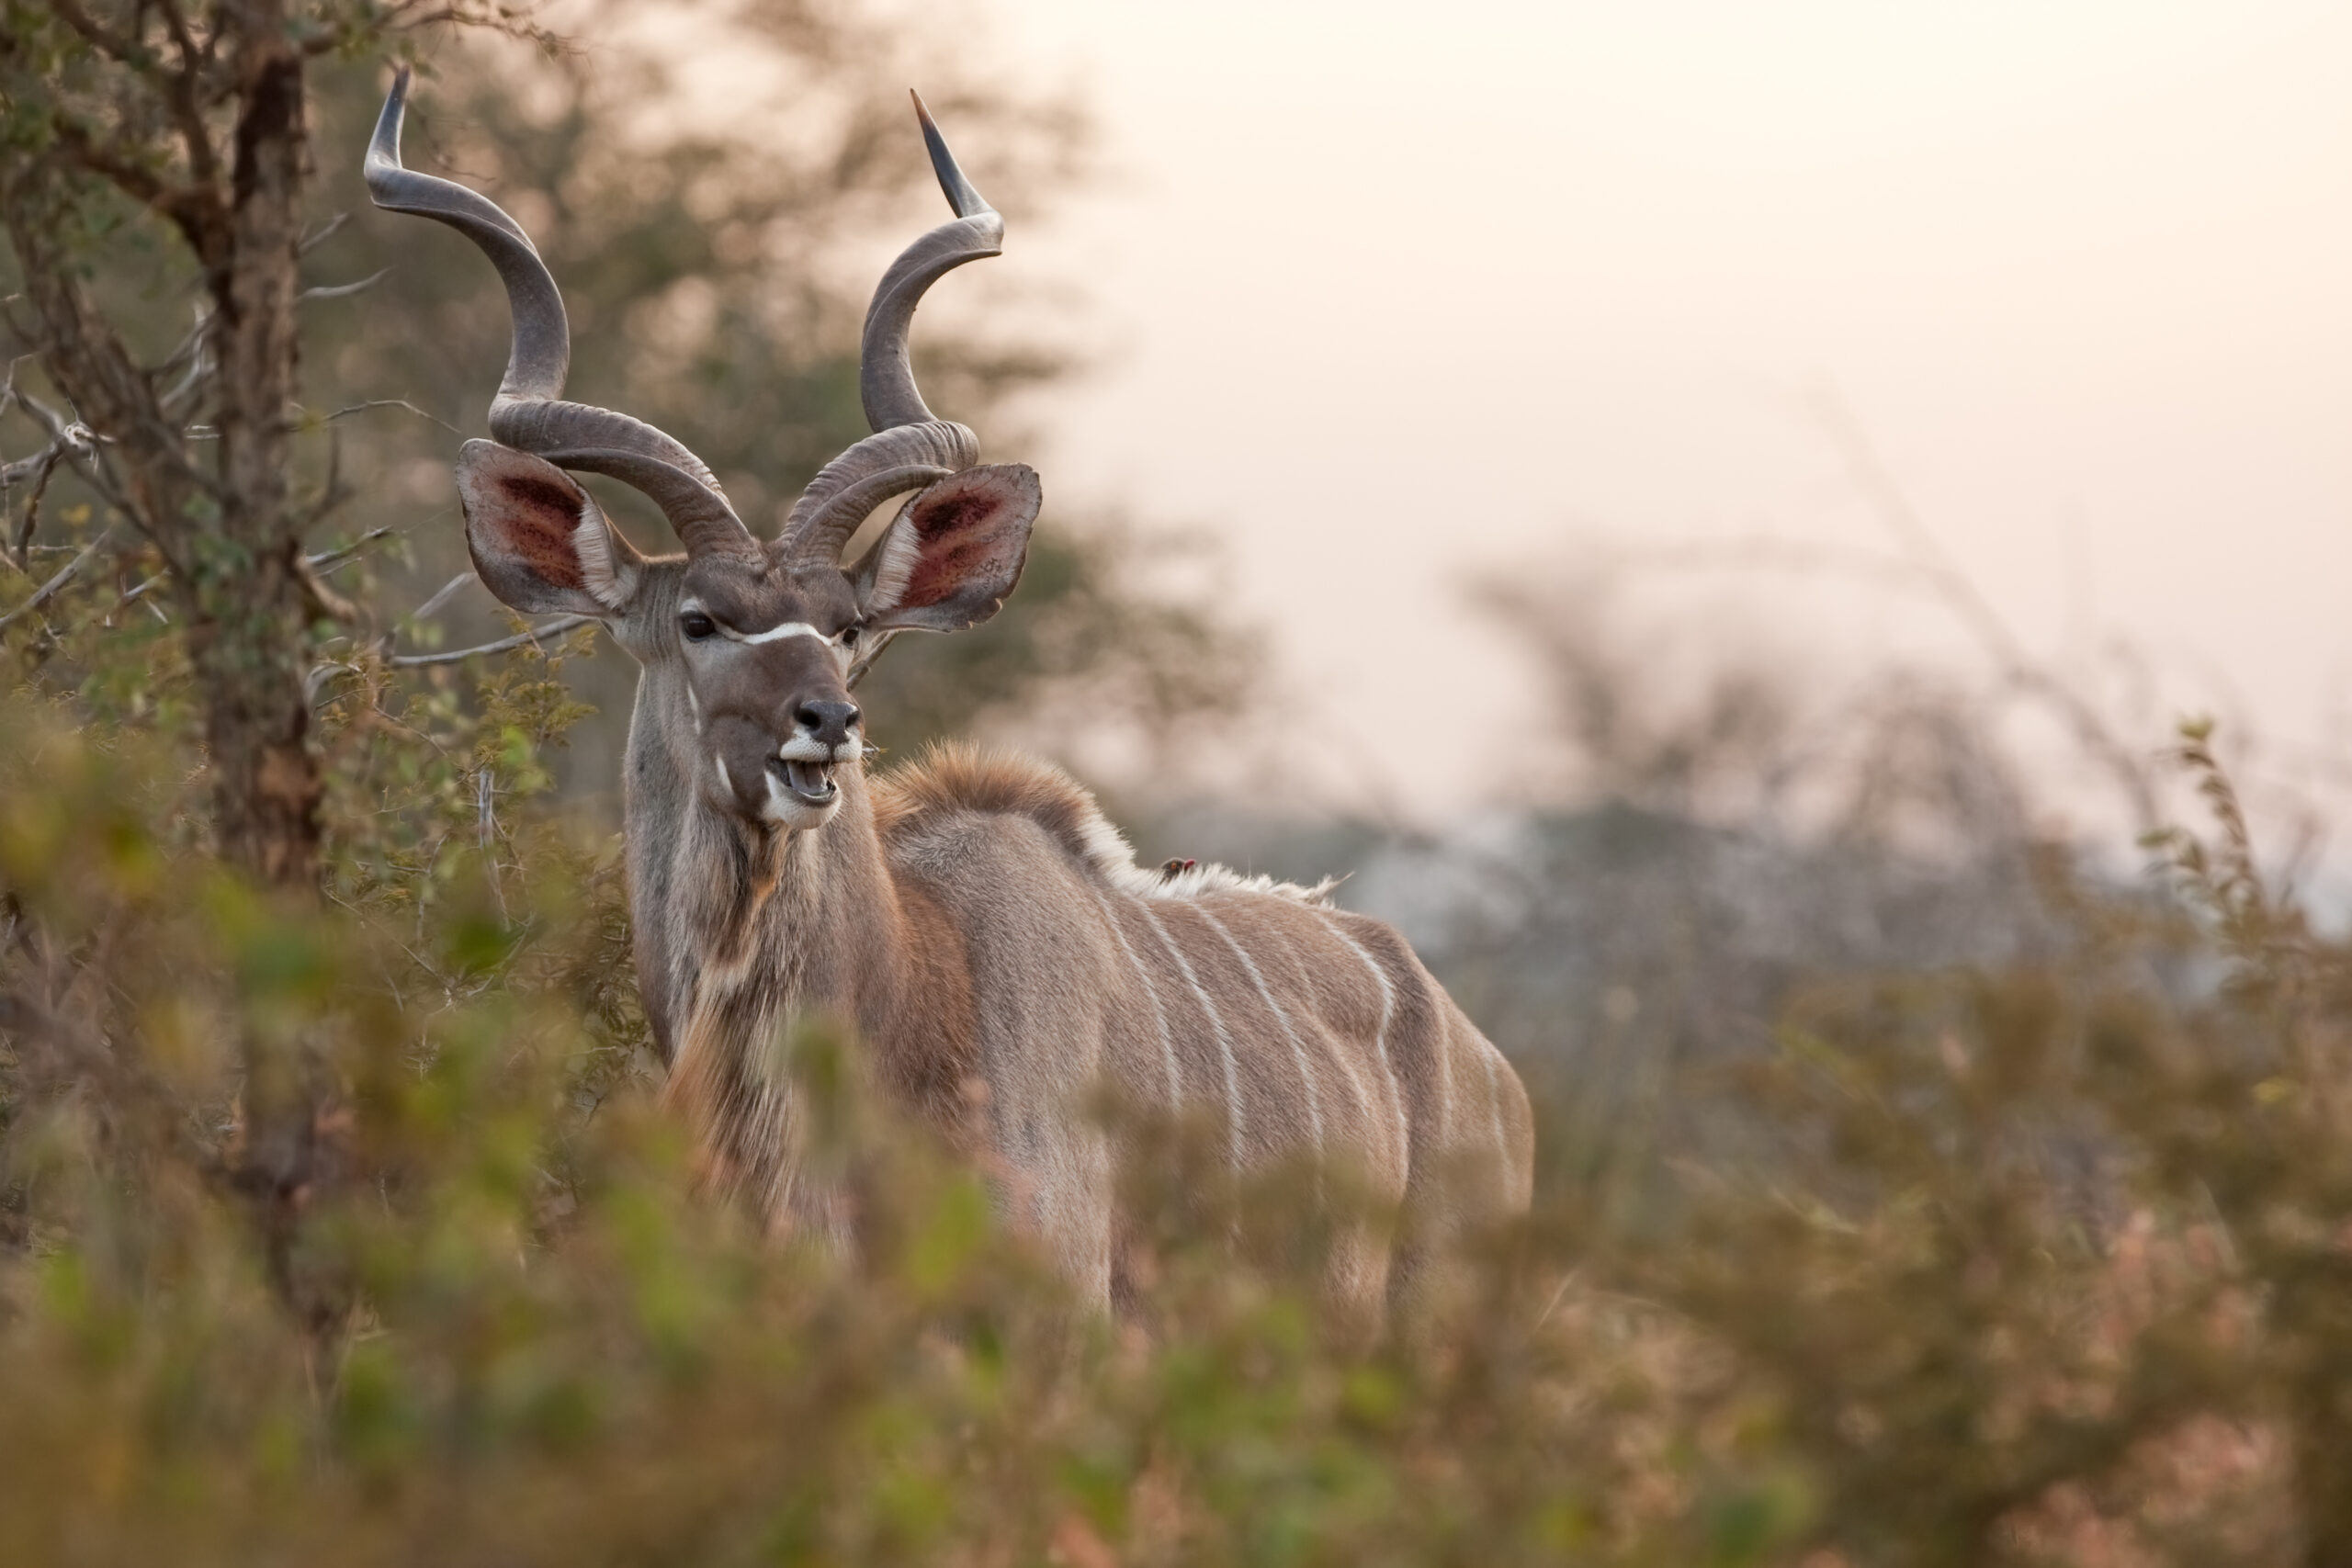 greater kudu, tragelaphus strepsiceros,kruger national park